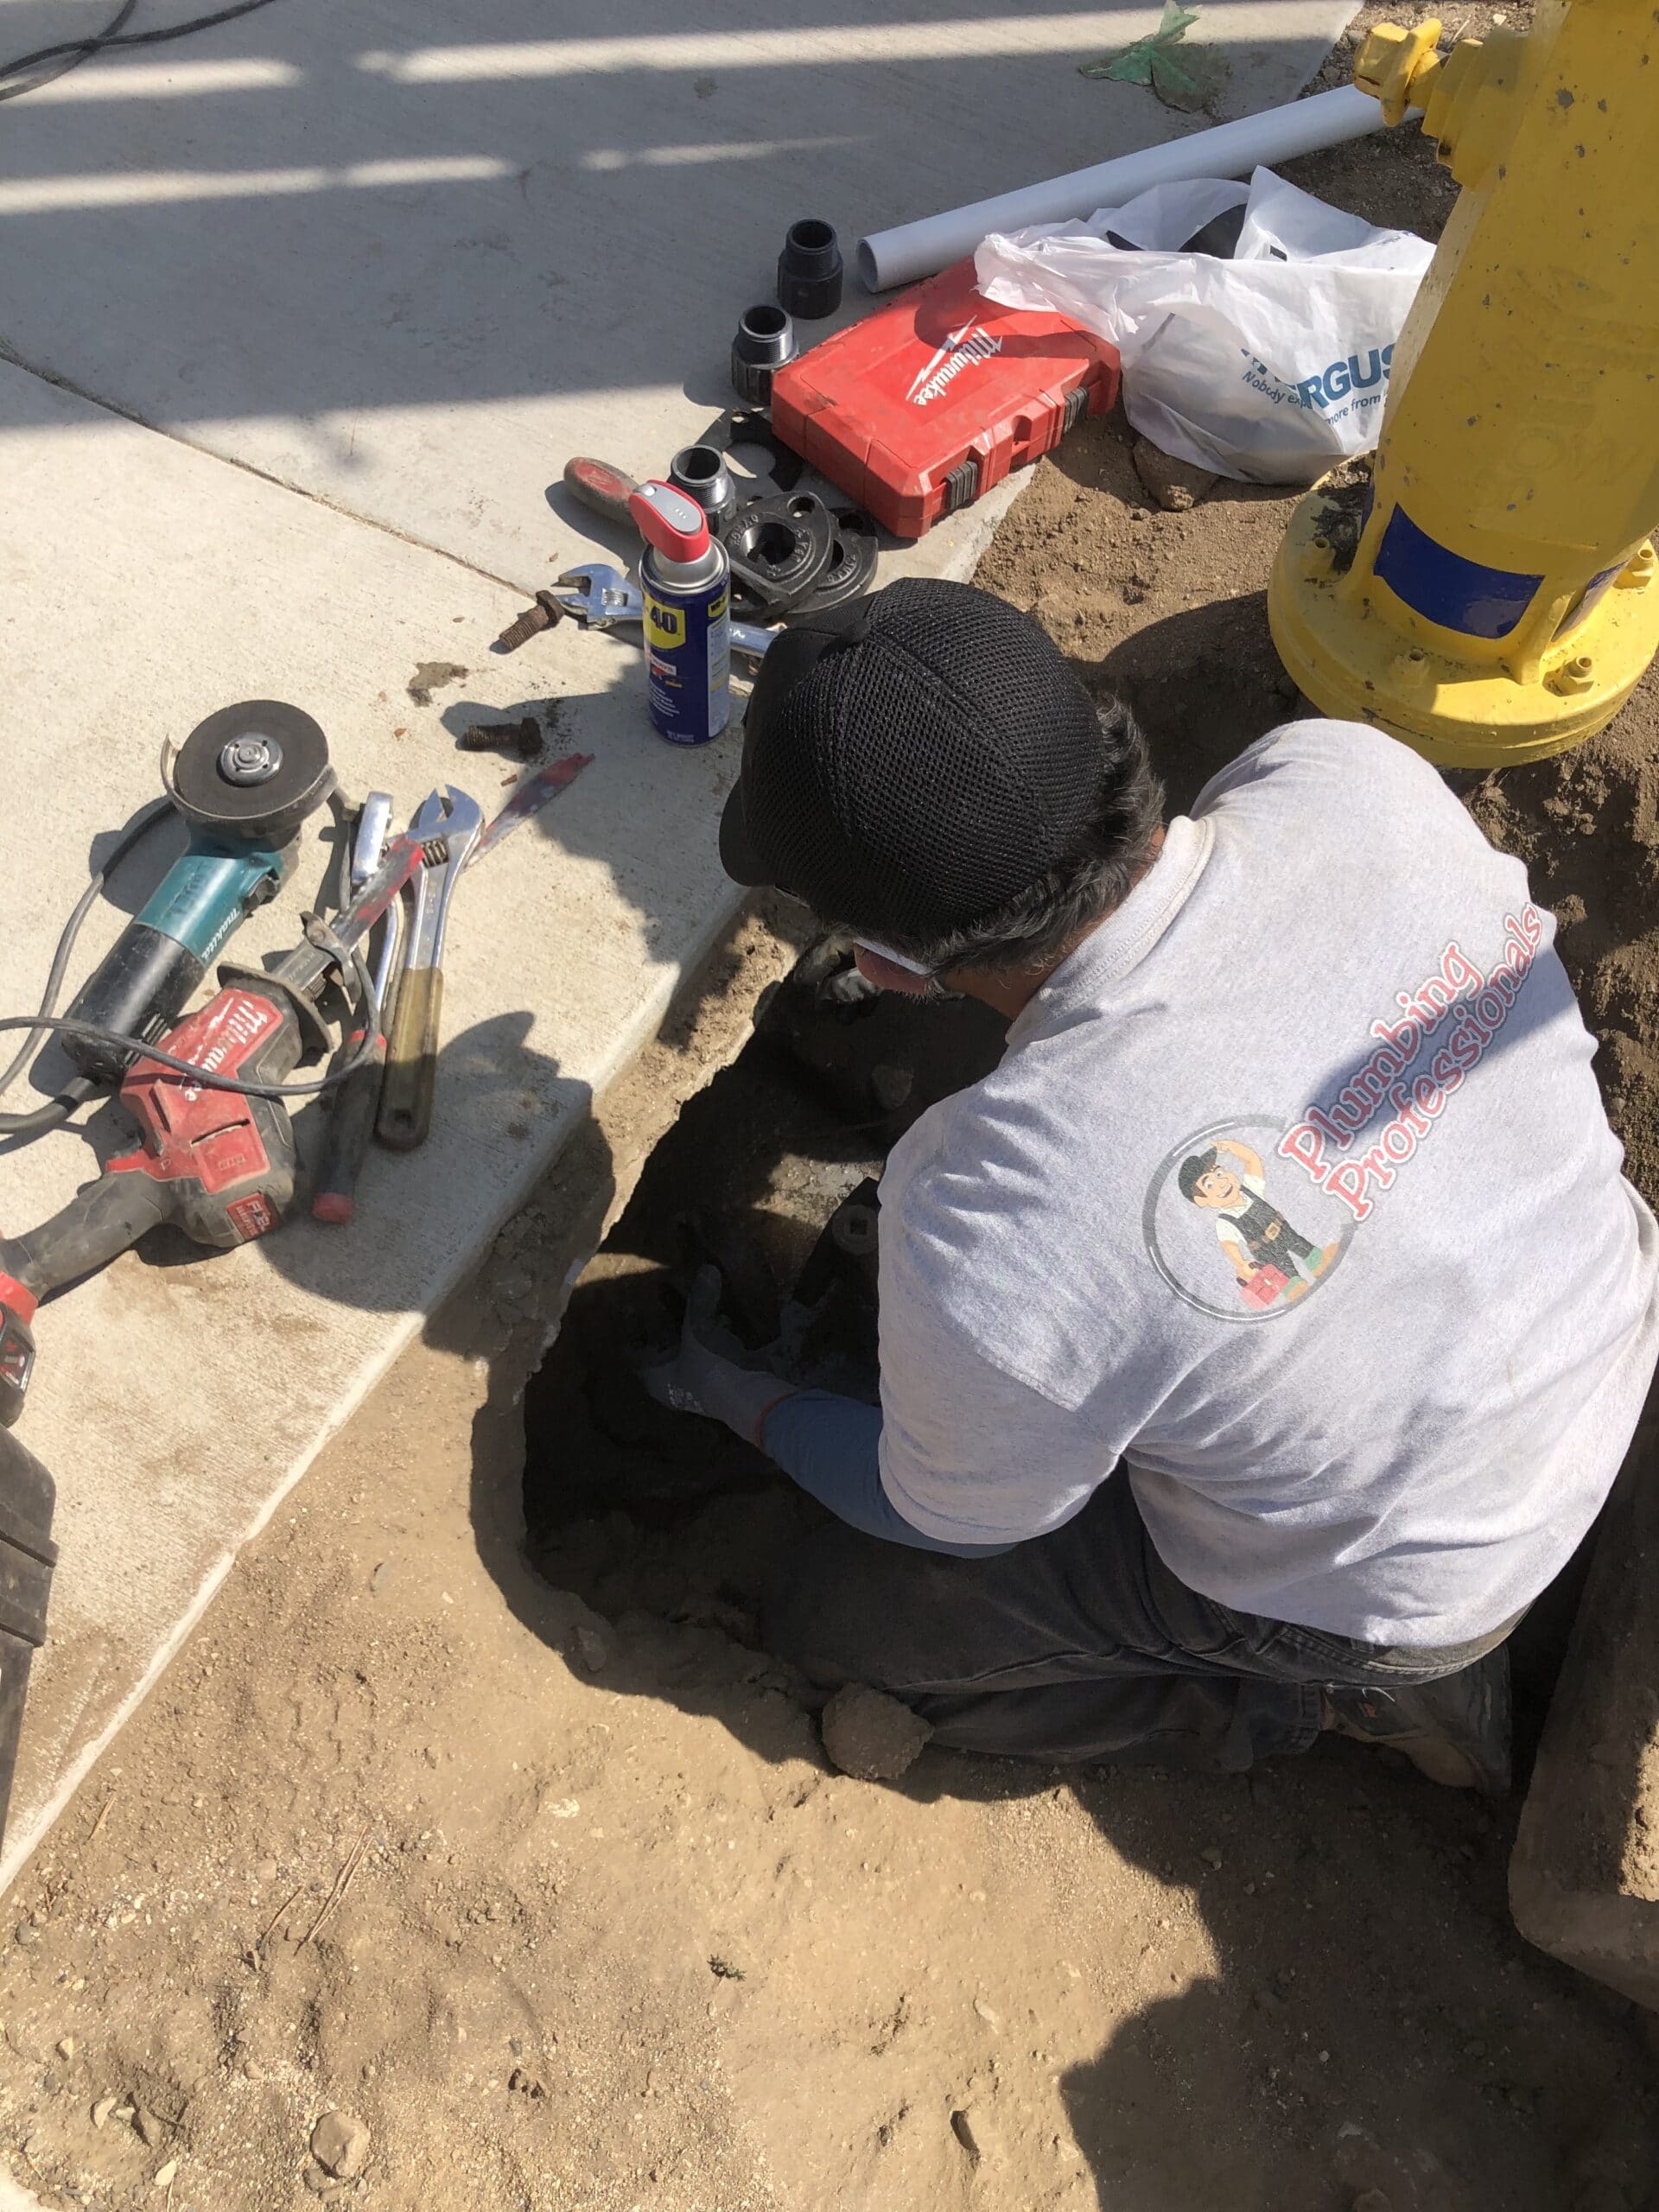 Plumbing Professional in Pasadena, CA - Sewer Repair